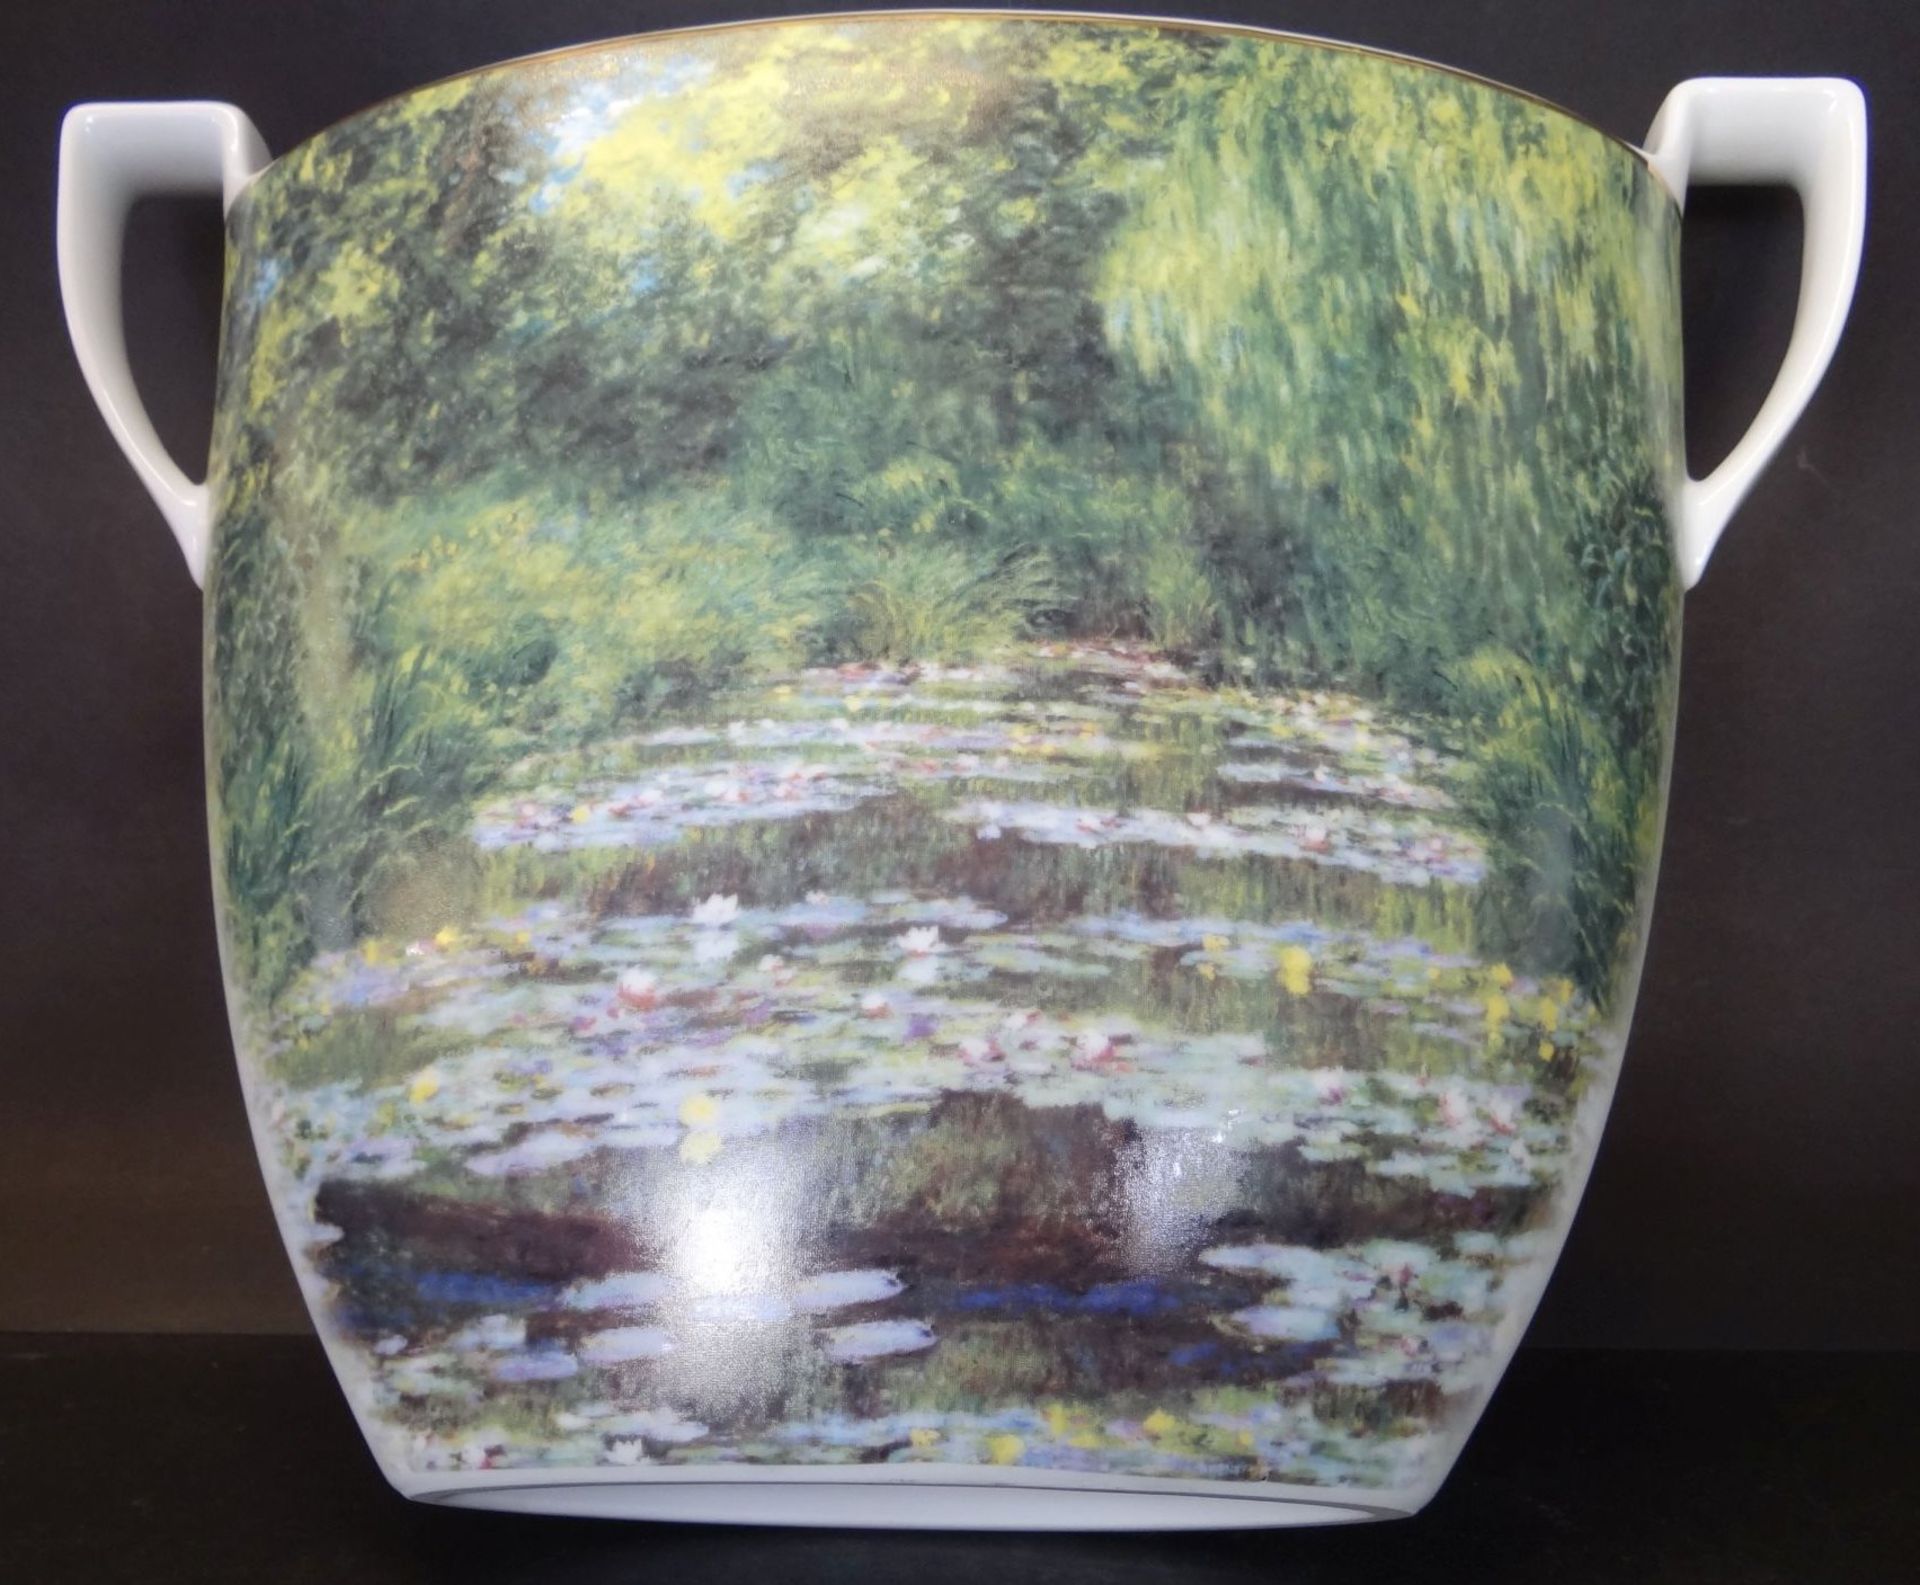 grosse ovoide Vase "Goebel" Artis Orbis, nach Monet, H-27 cm, B-37 cm - Bild 3 aus 6